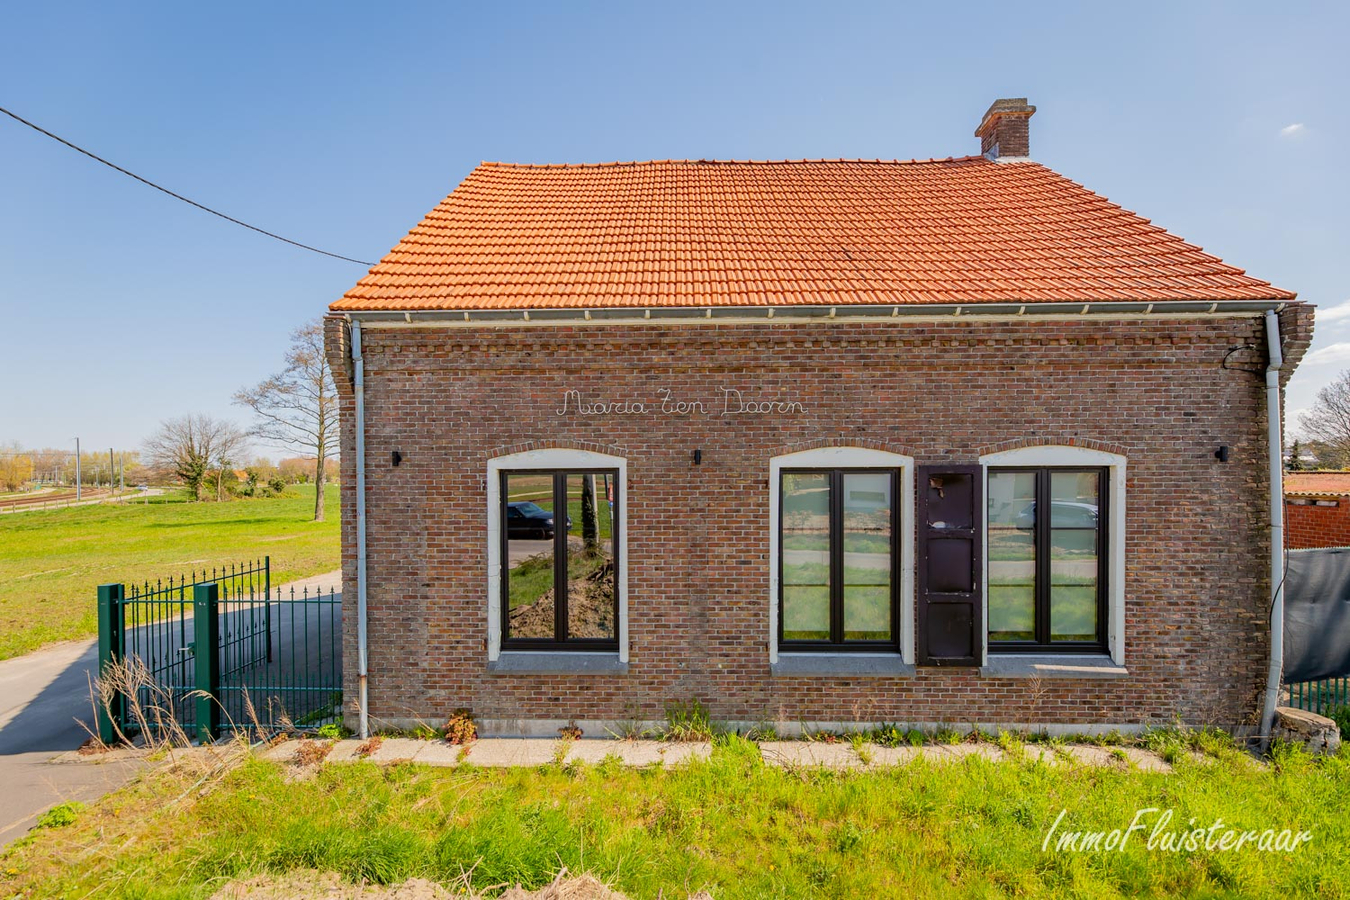 Property sold in Beveren-Waas